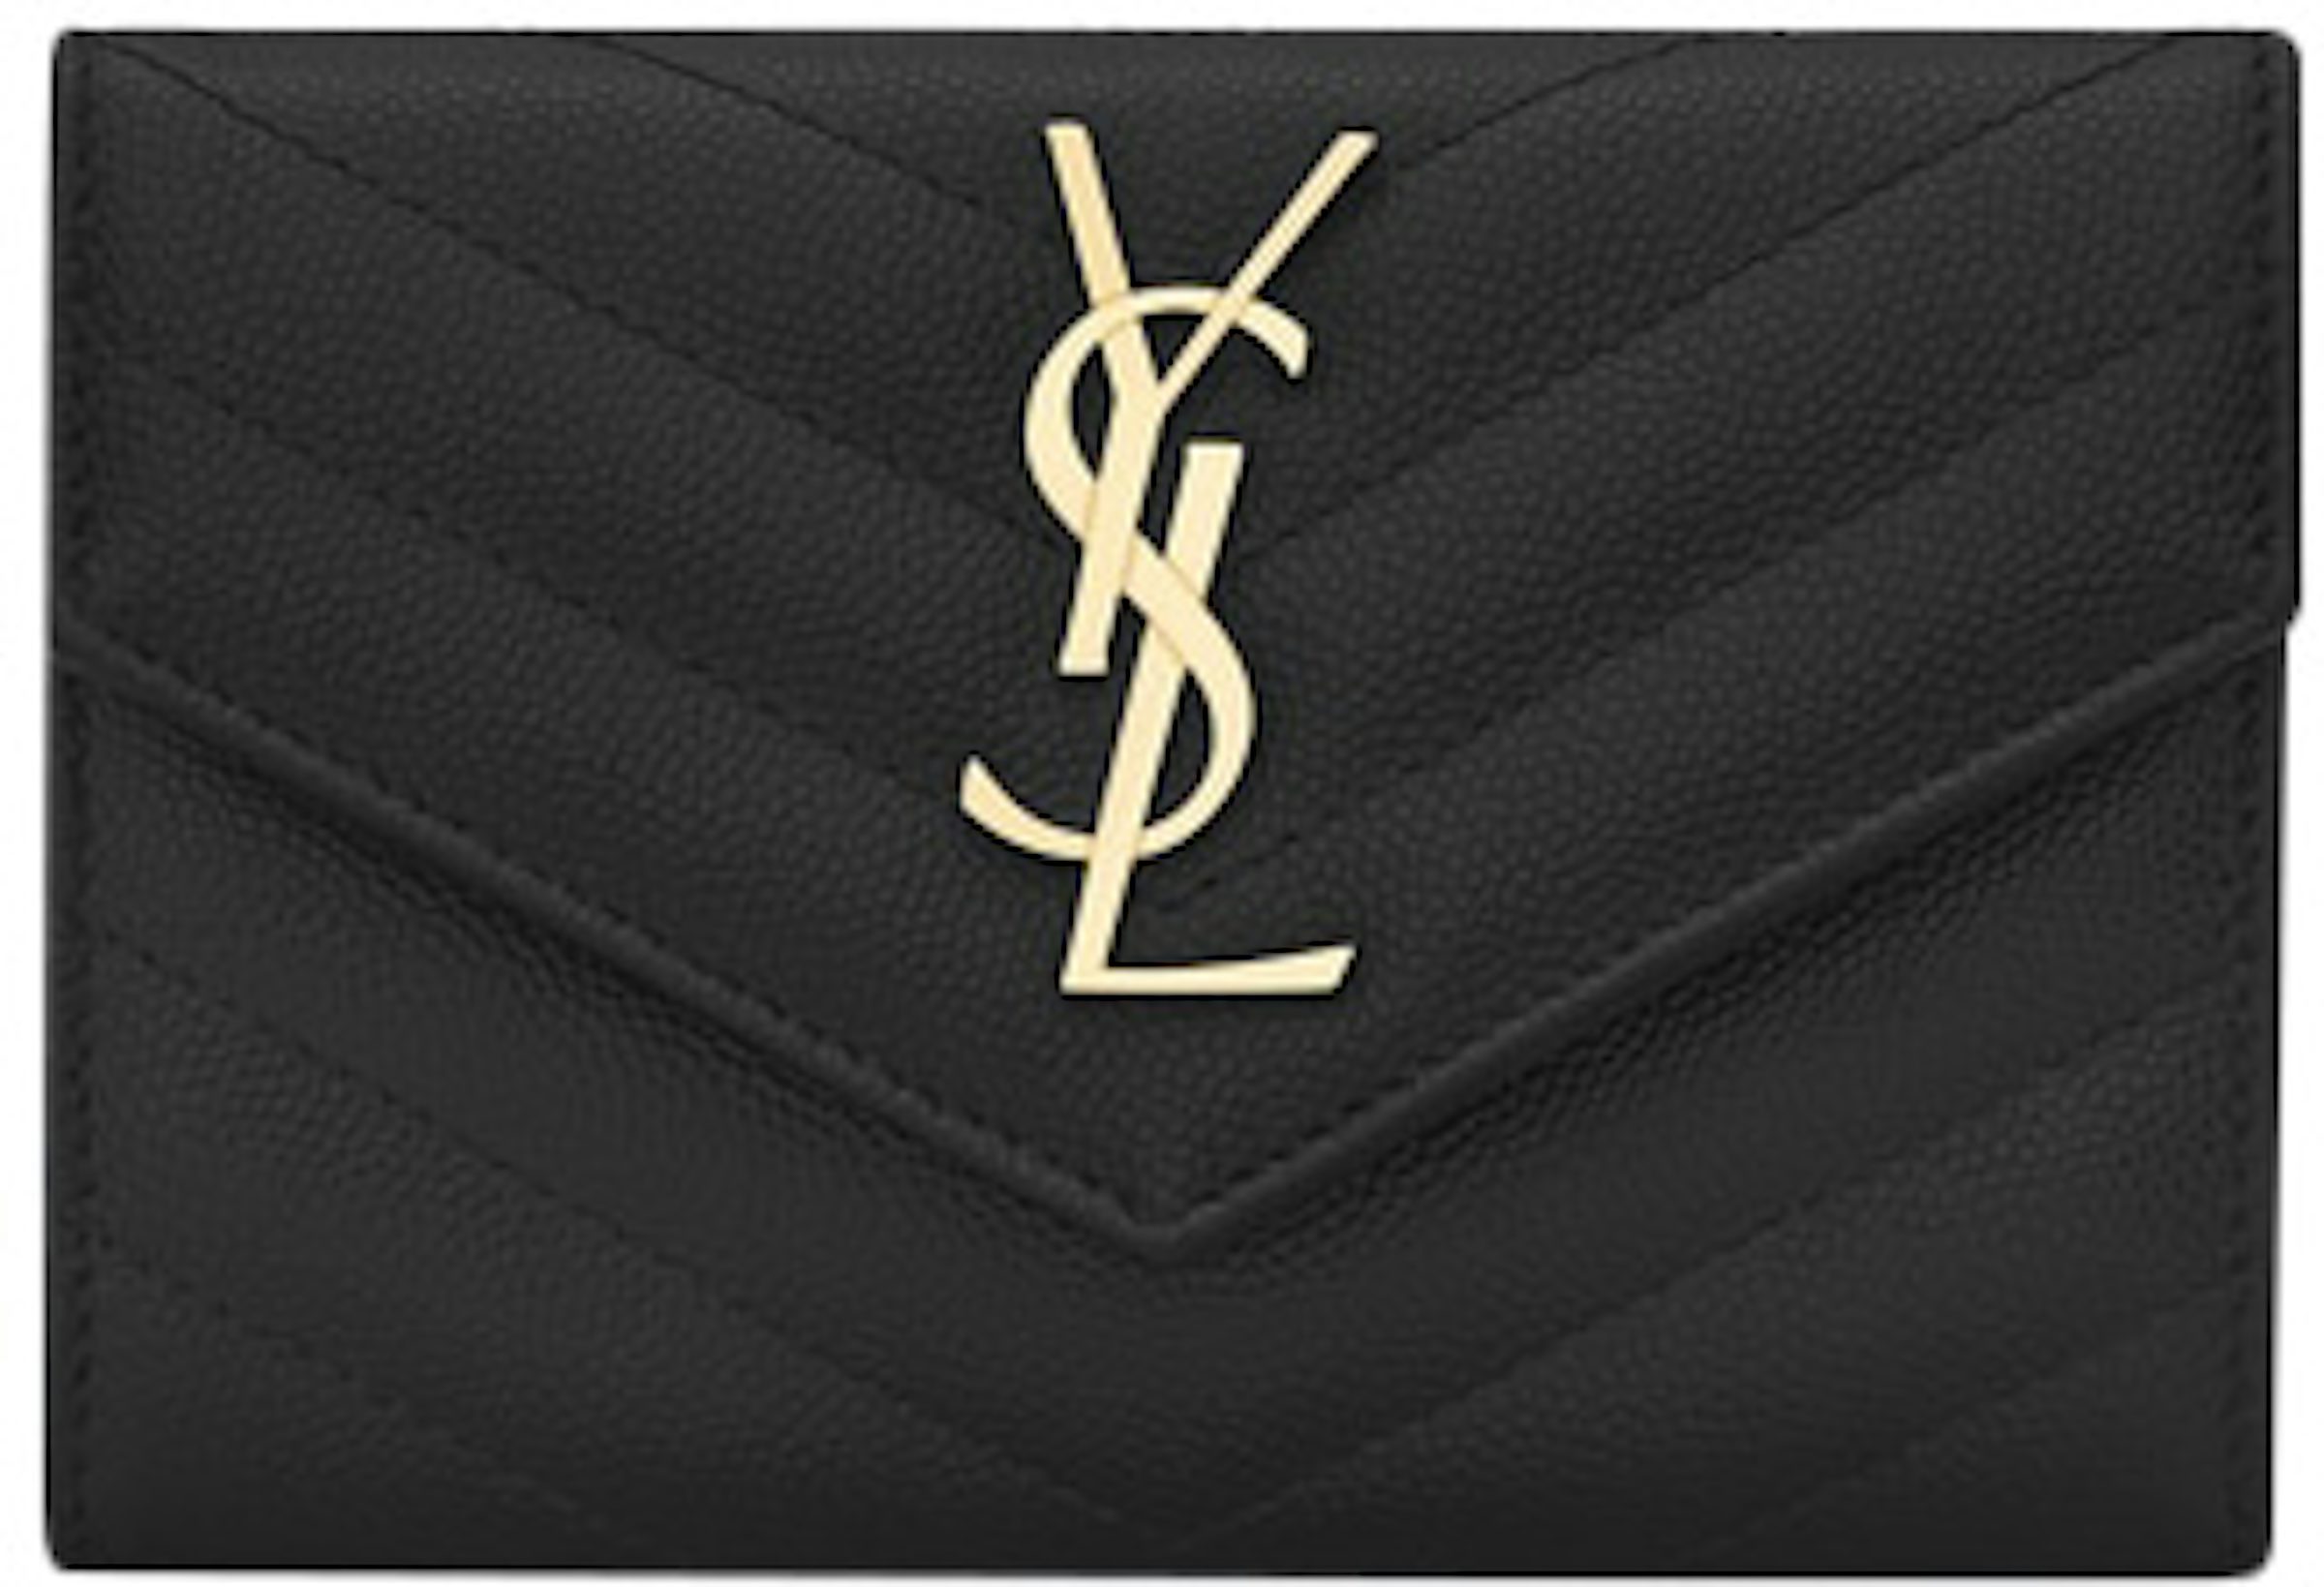 Saint Laurent YSL Grain de Poudre Envelope Wallet on a Chain Black &  Gold WOC